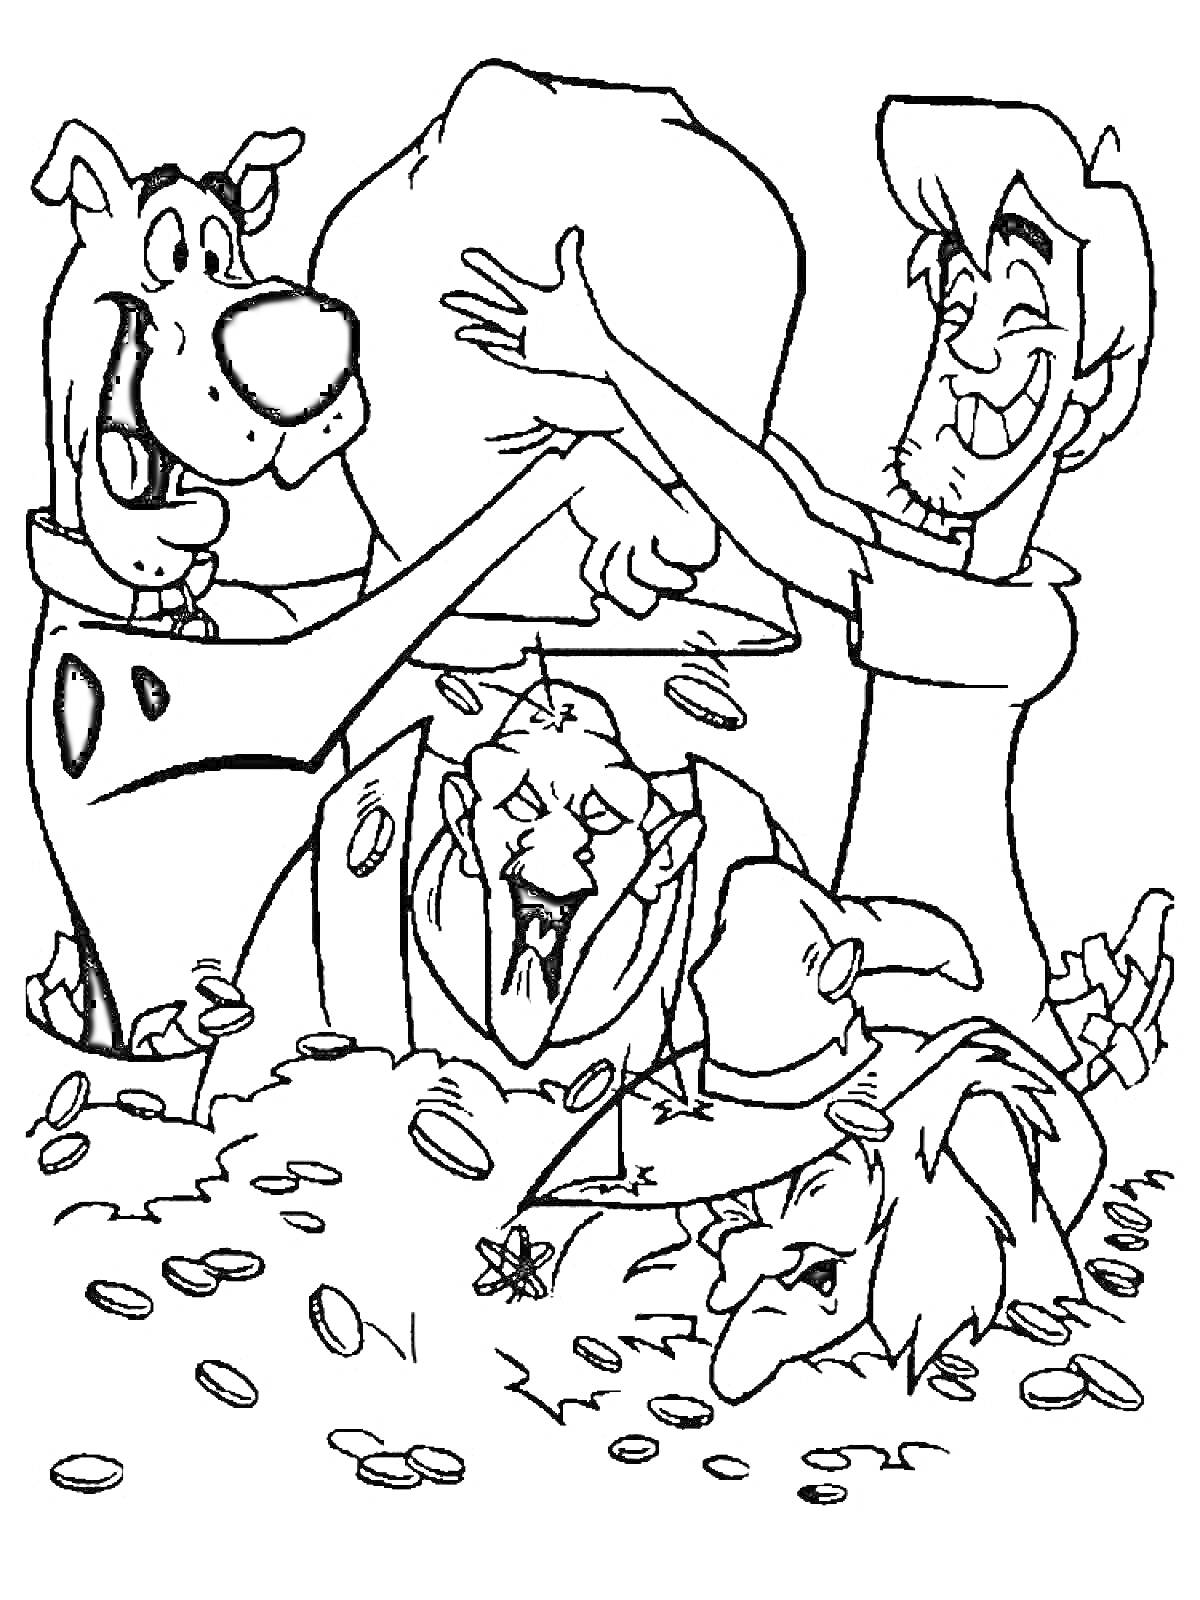 Скуби Ду и Шэгги с кучей золотых монет, злодей в ловушке